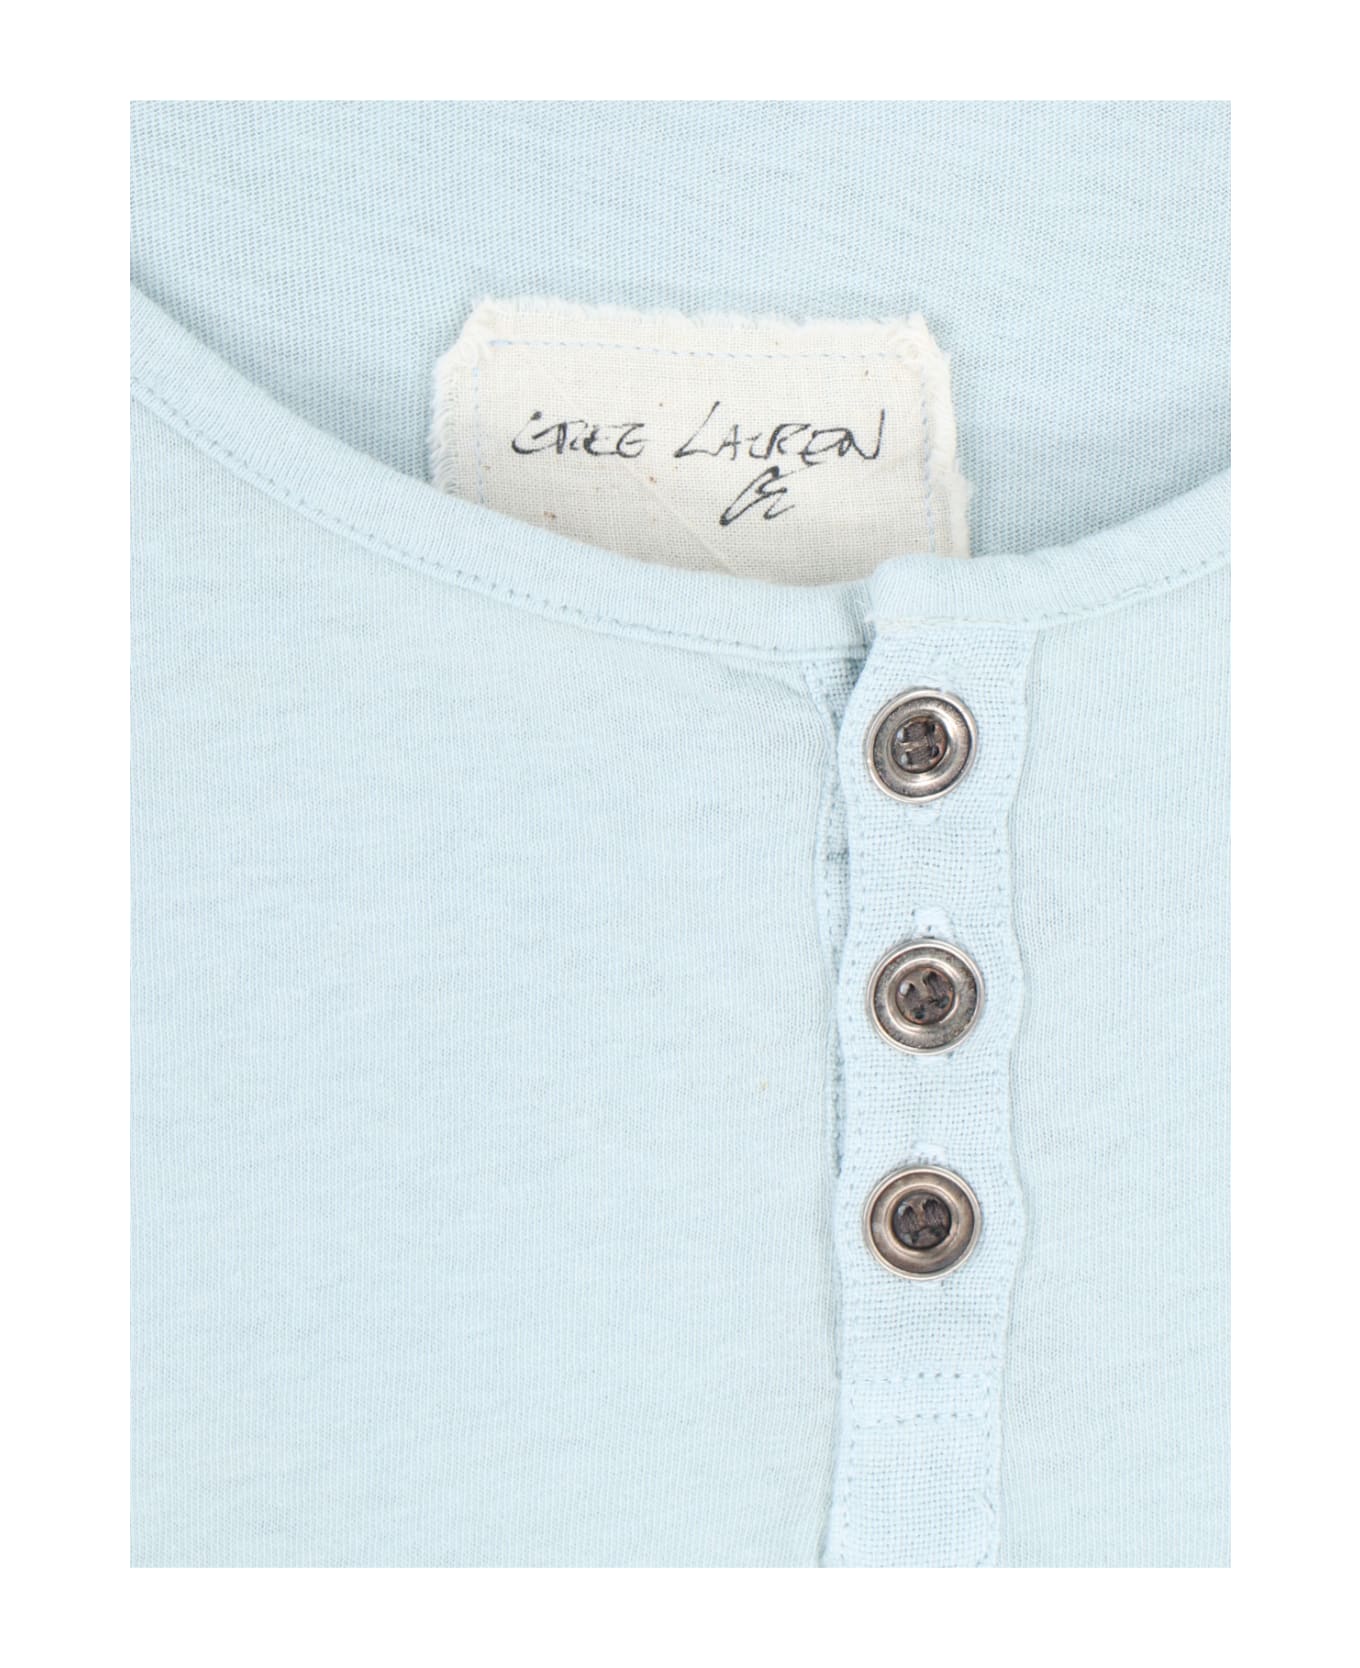 Greg Lauren Crew-neck T-shirt - Light Blue